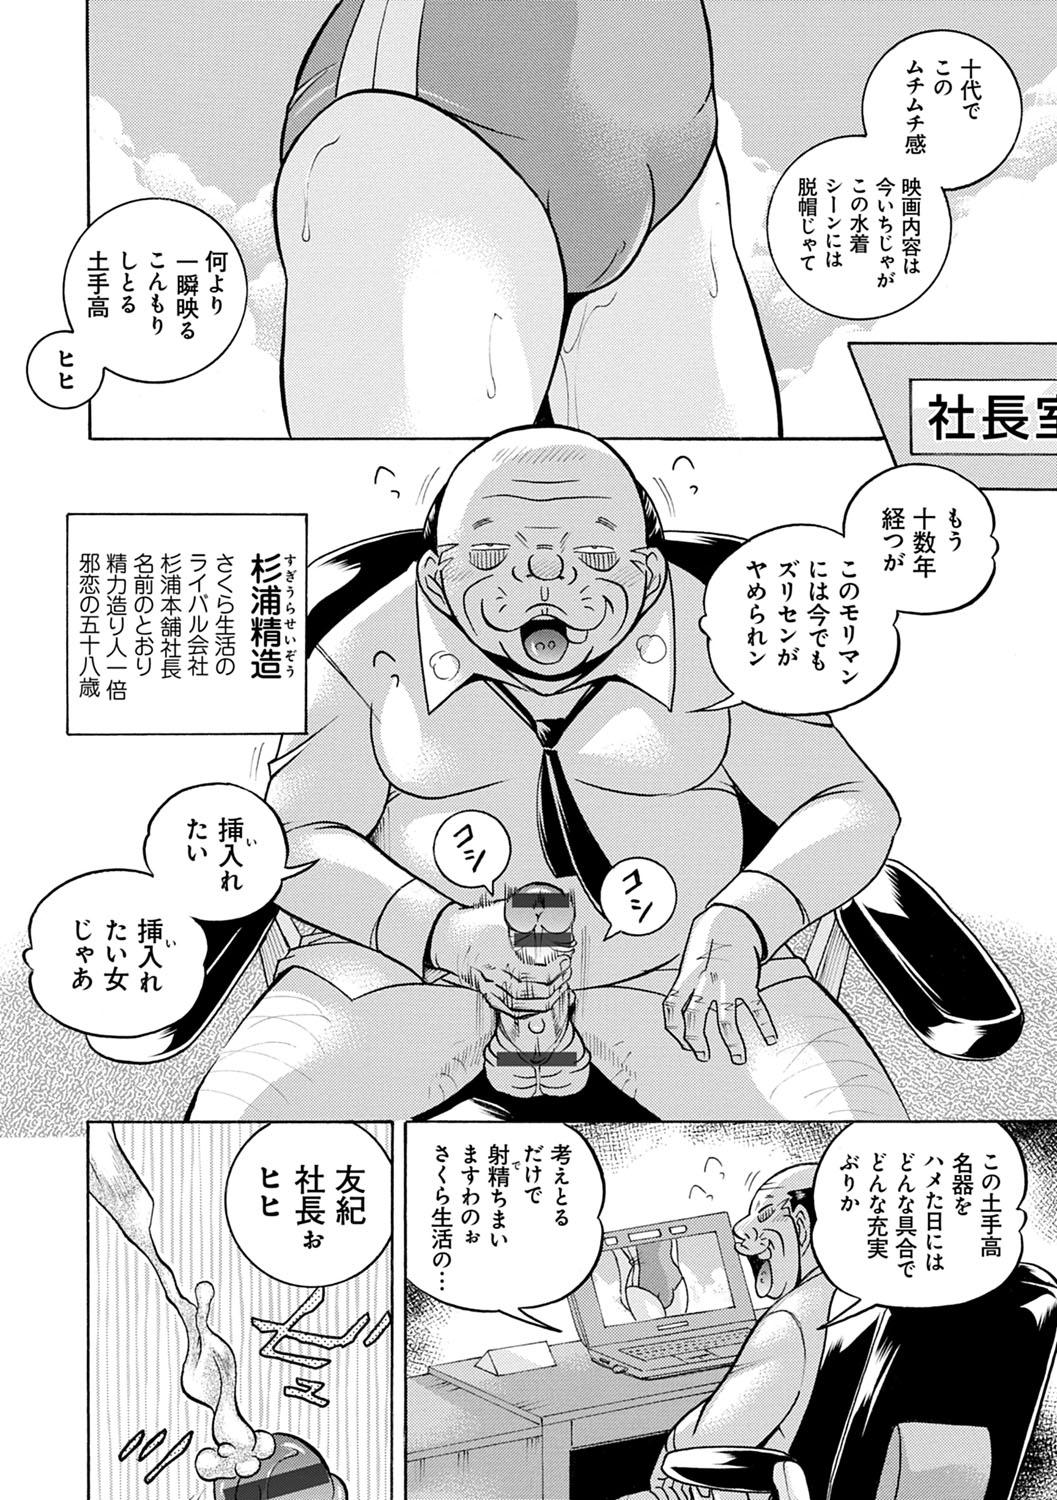 [Chuuka Naruto] Bijin Shachou Yuki ~Mitsuyaku no Nikusettai~ - YUKI of The Beautiful Chief Executive Officer ~The secret sweet treaty by sexual reception~ [Digital] 8